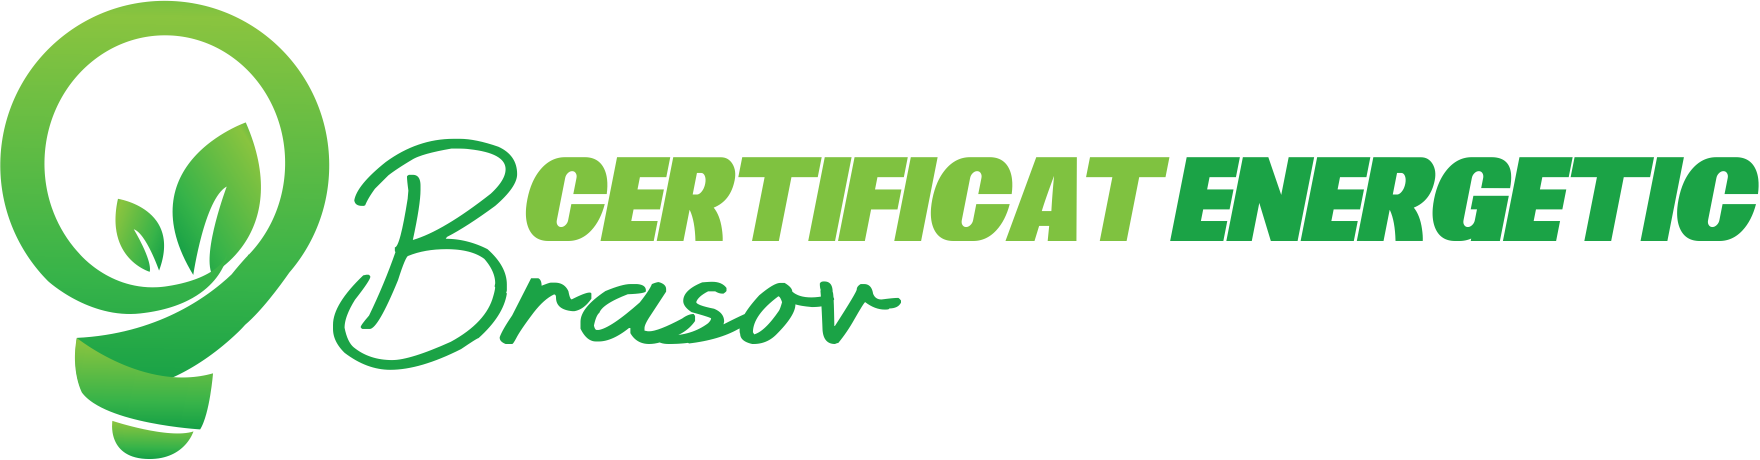 Certificat Energetic Brasov